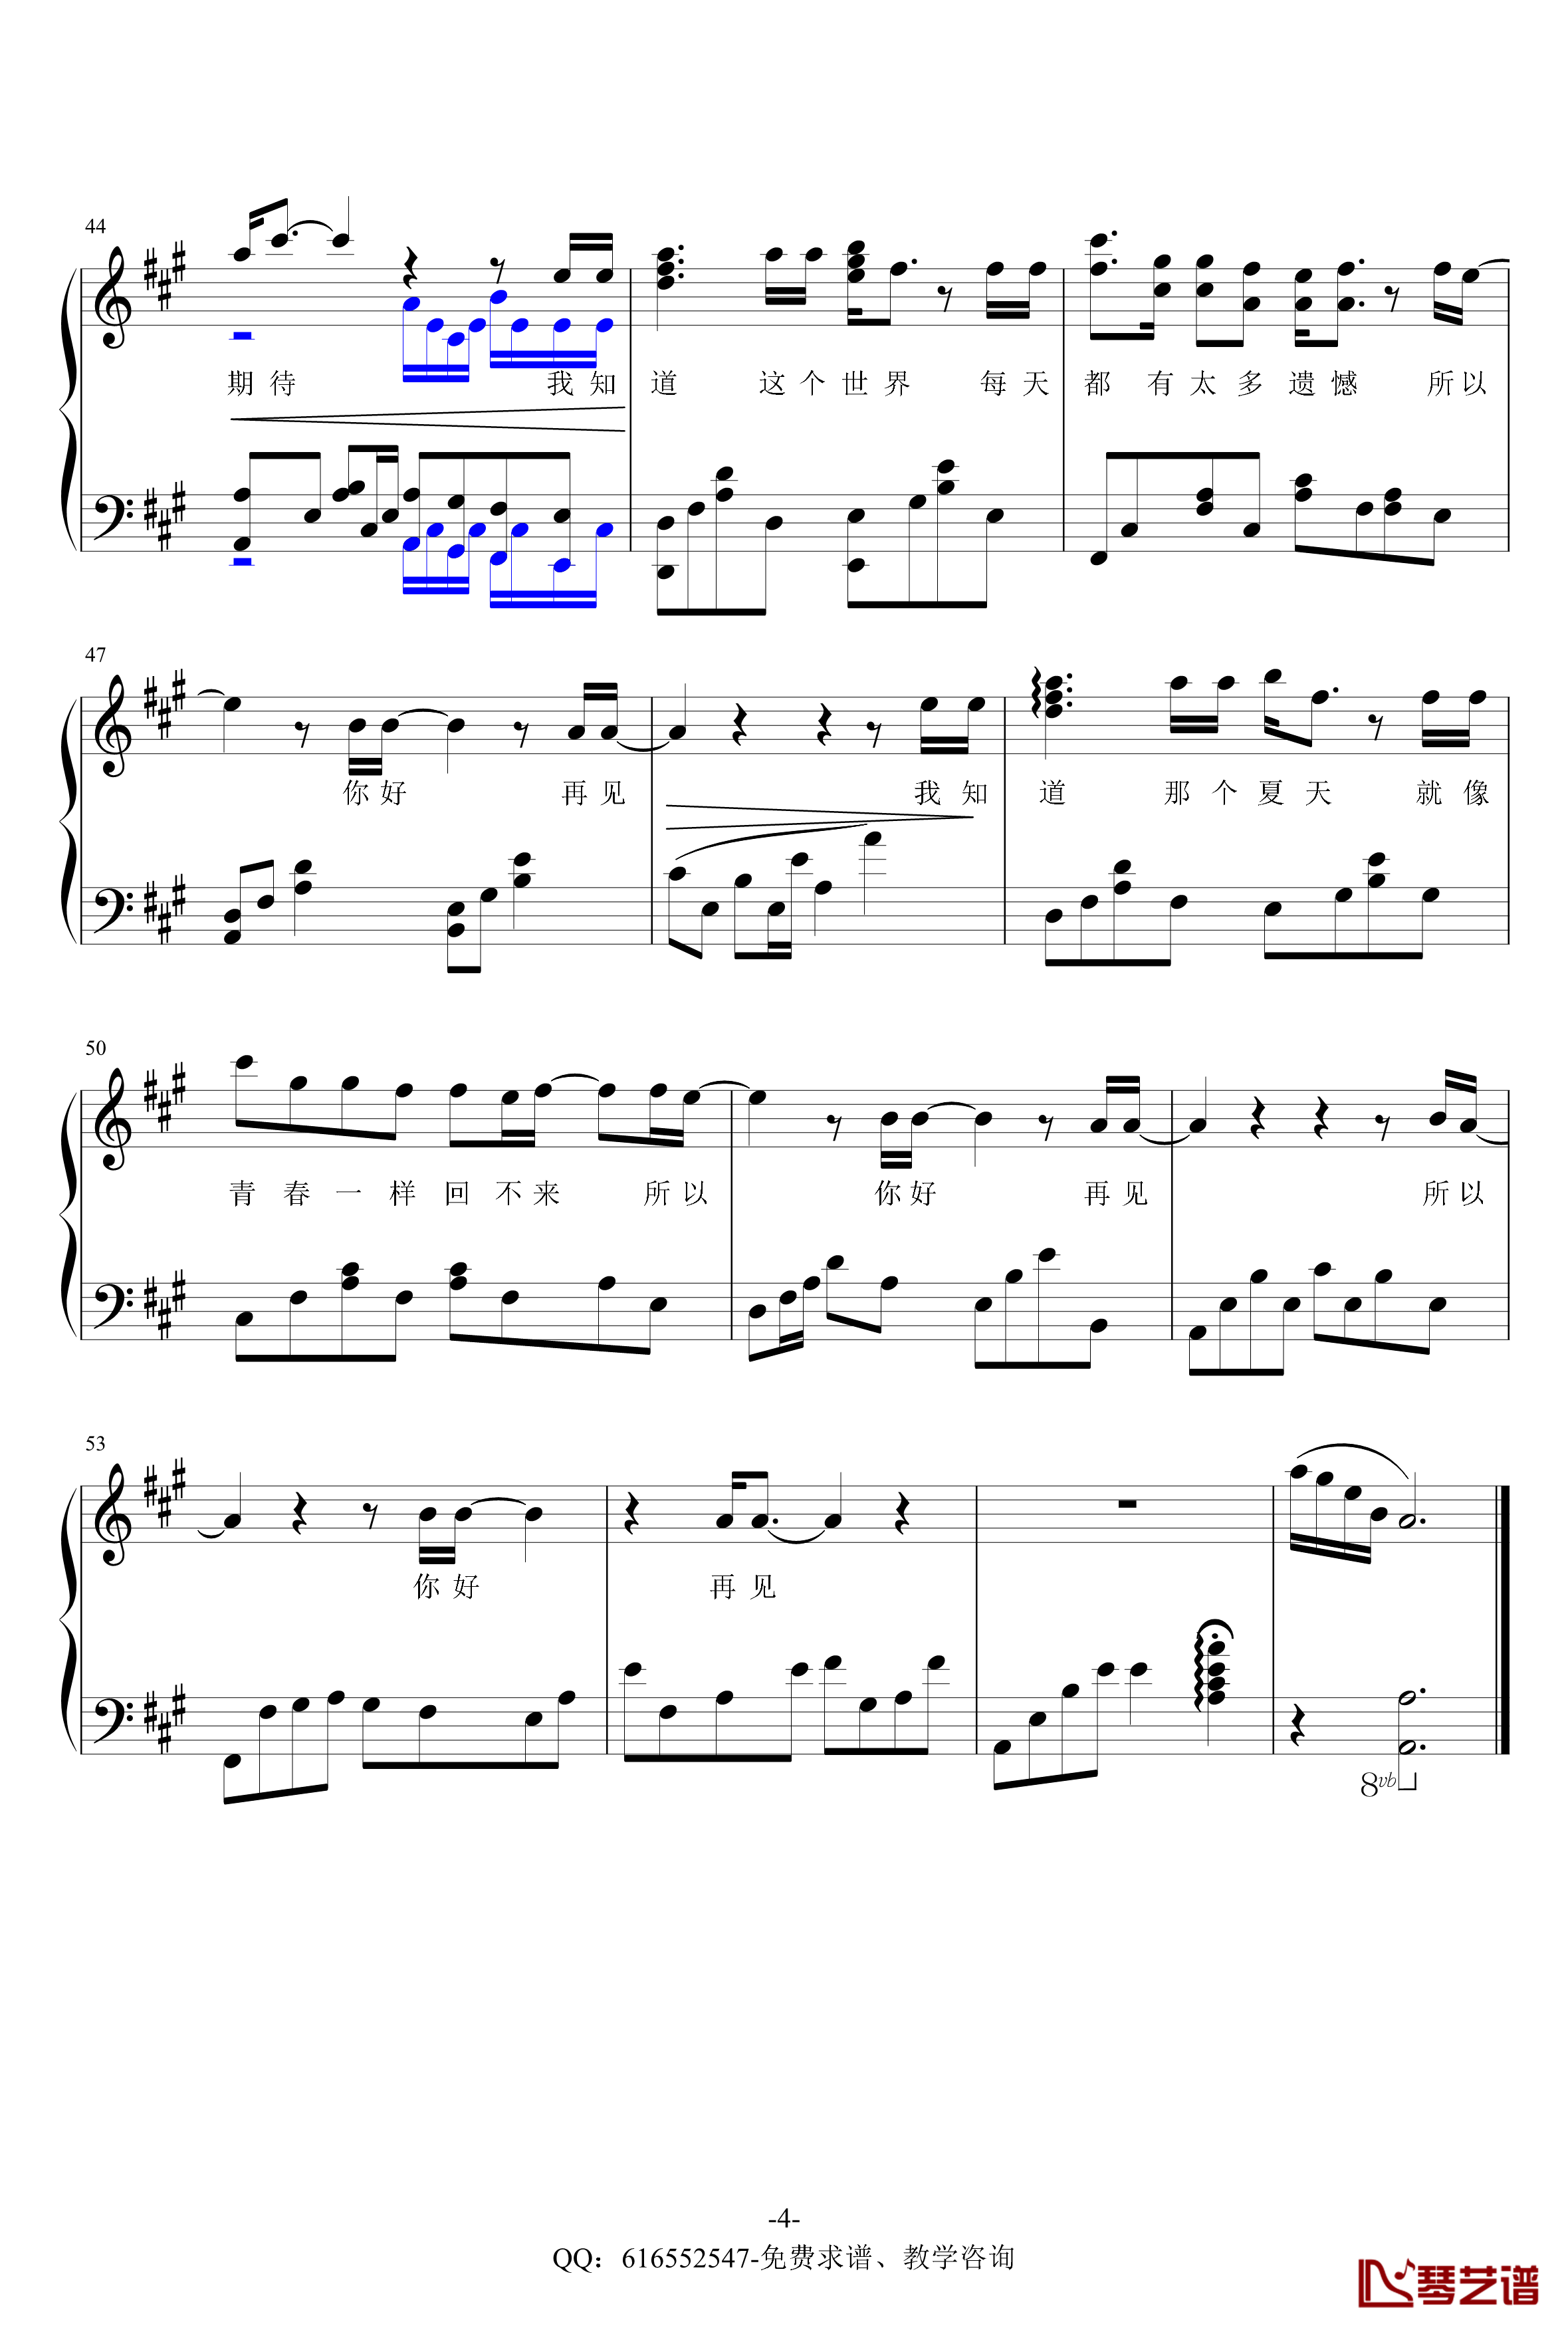 安和桥钢琴谱-金龙鱼原声独奏版170326-包师语4